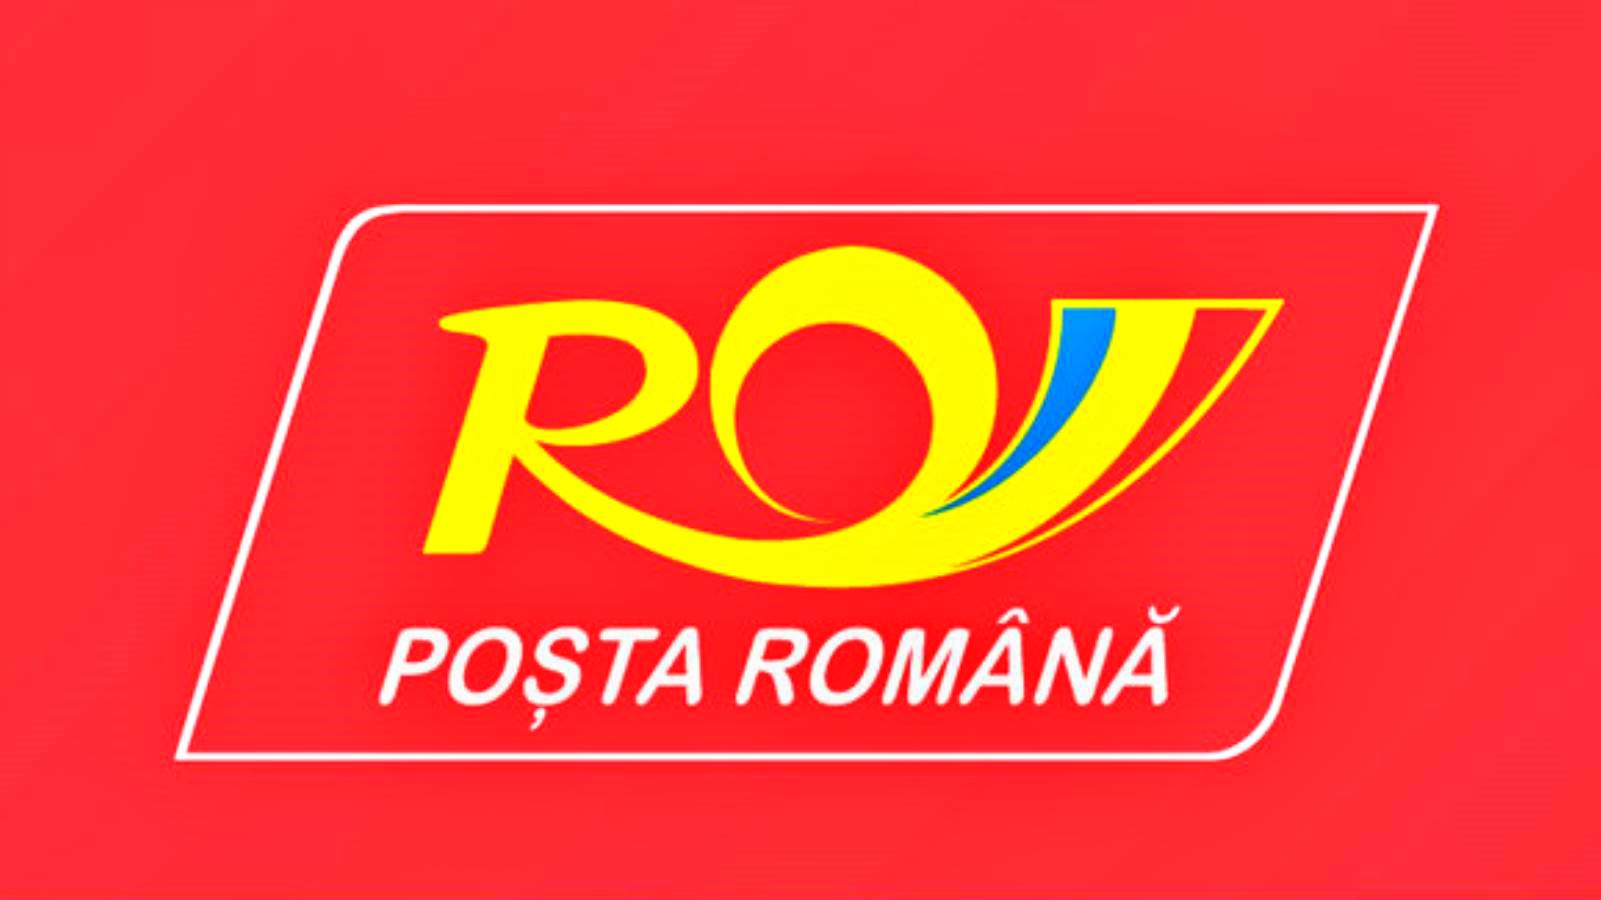 Correo rumano anuncia asociación con eBay para MILLONES de rumanos